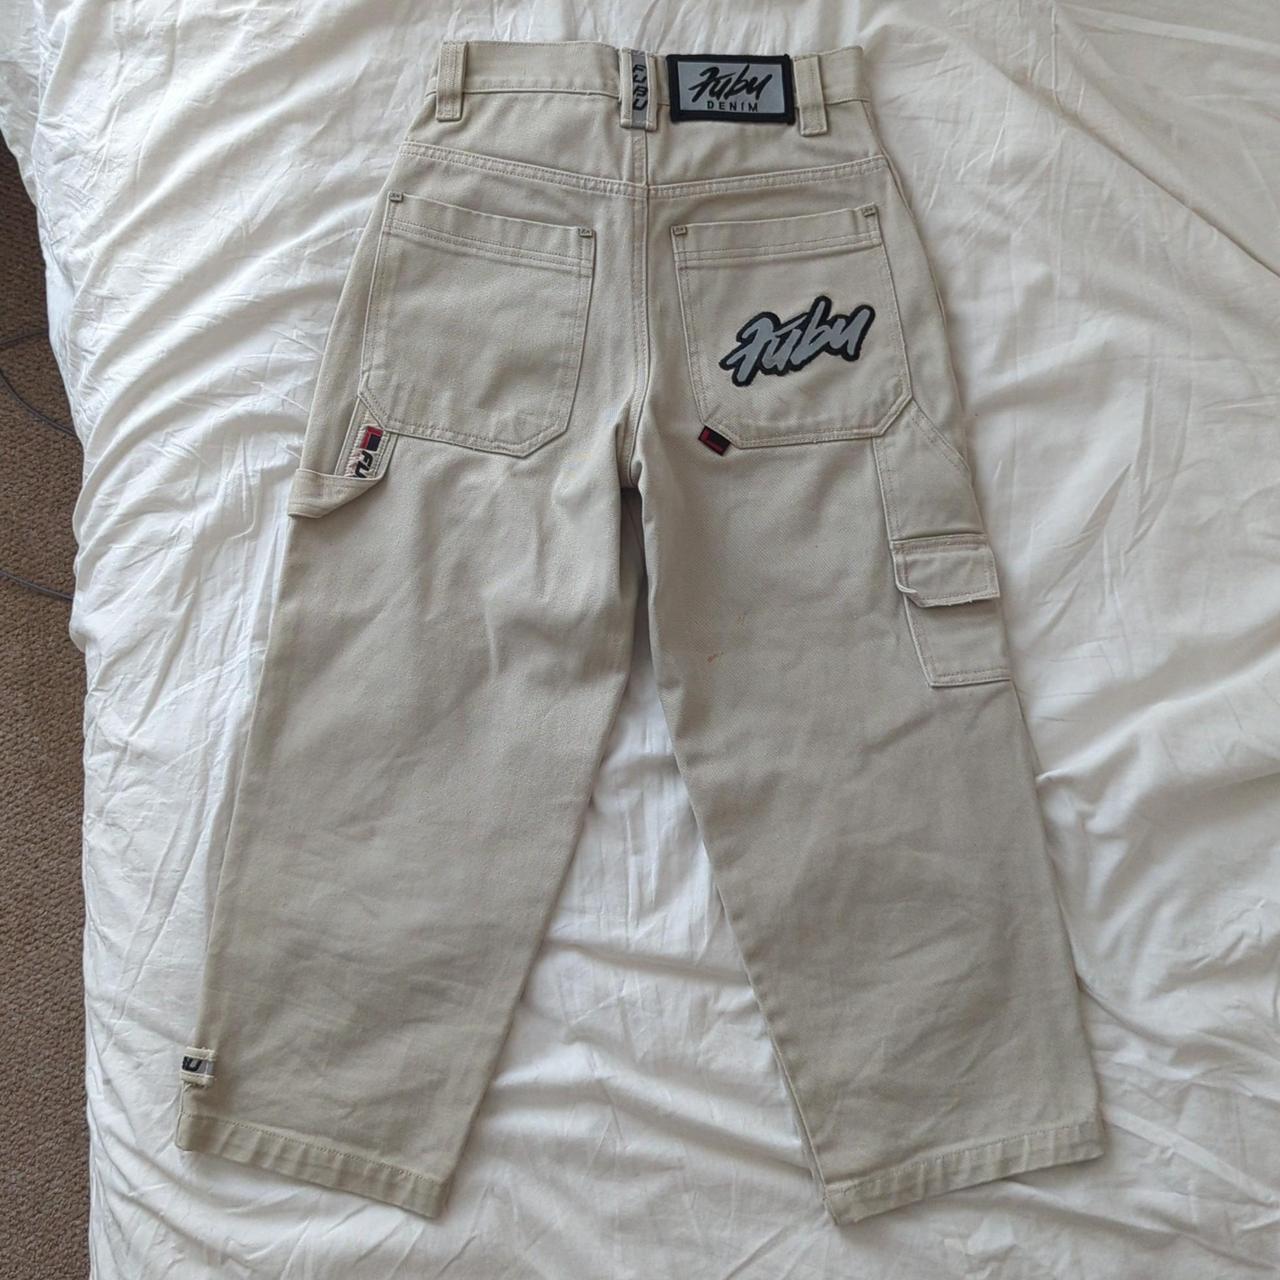 Rare Size 8 Fubu 00's Y2K 3/4 trousers Great... - Depop